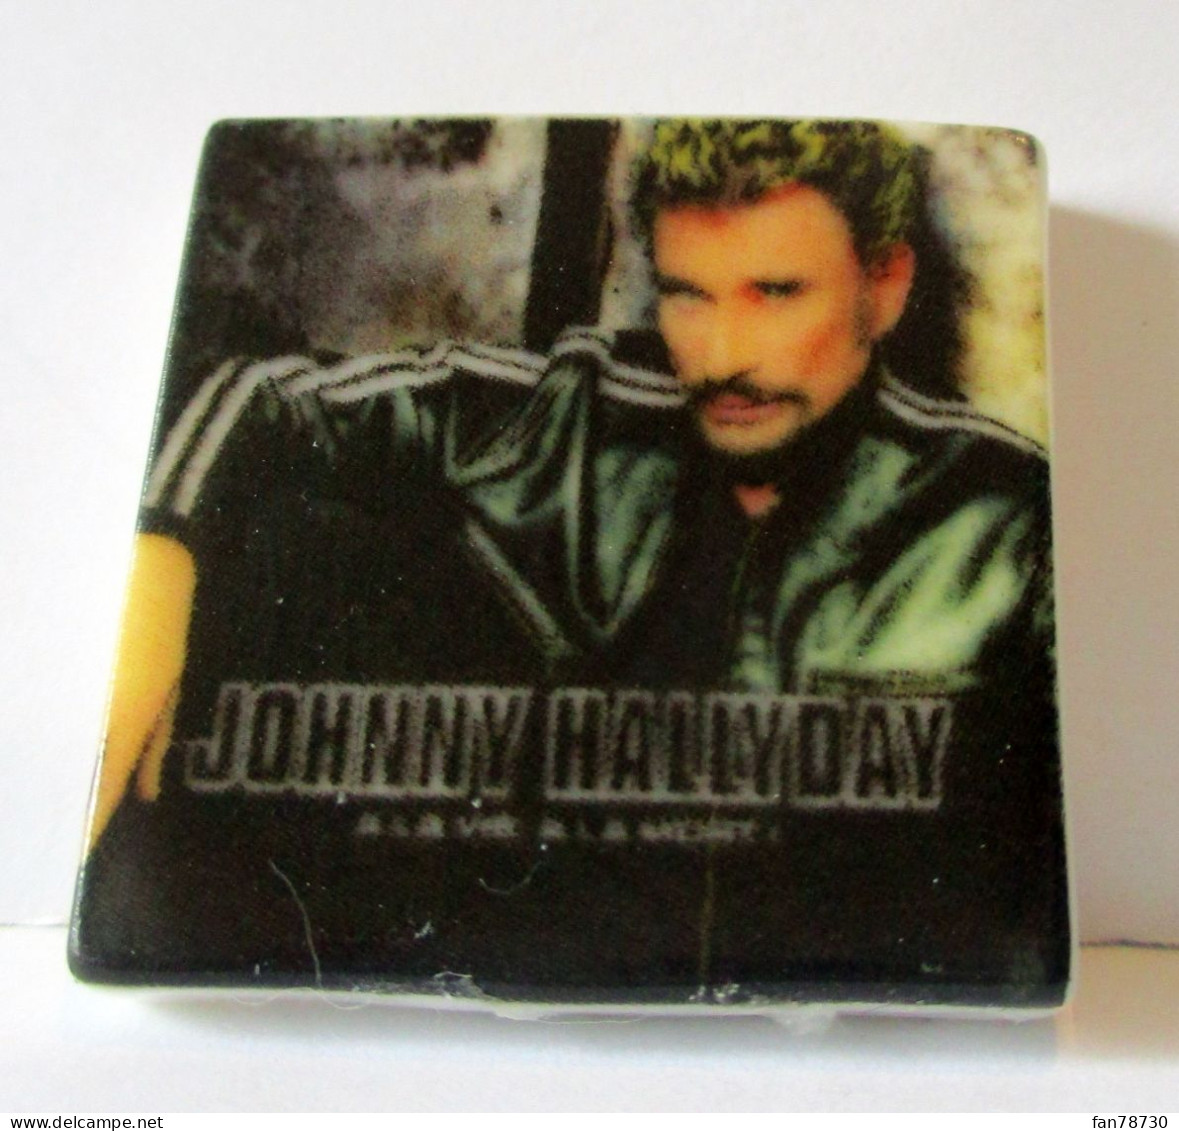 Fèves brillantes plates X 5 - Johnny Hallyday - La Discographie 2021 - Frais du site déduits